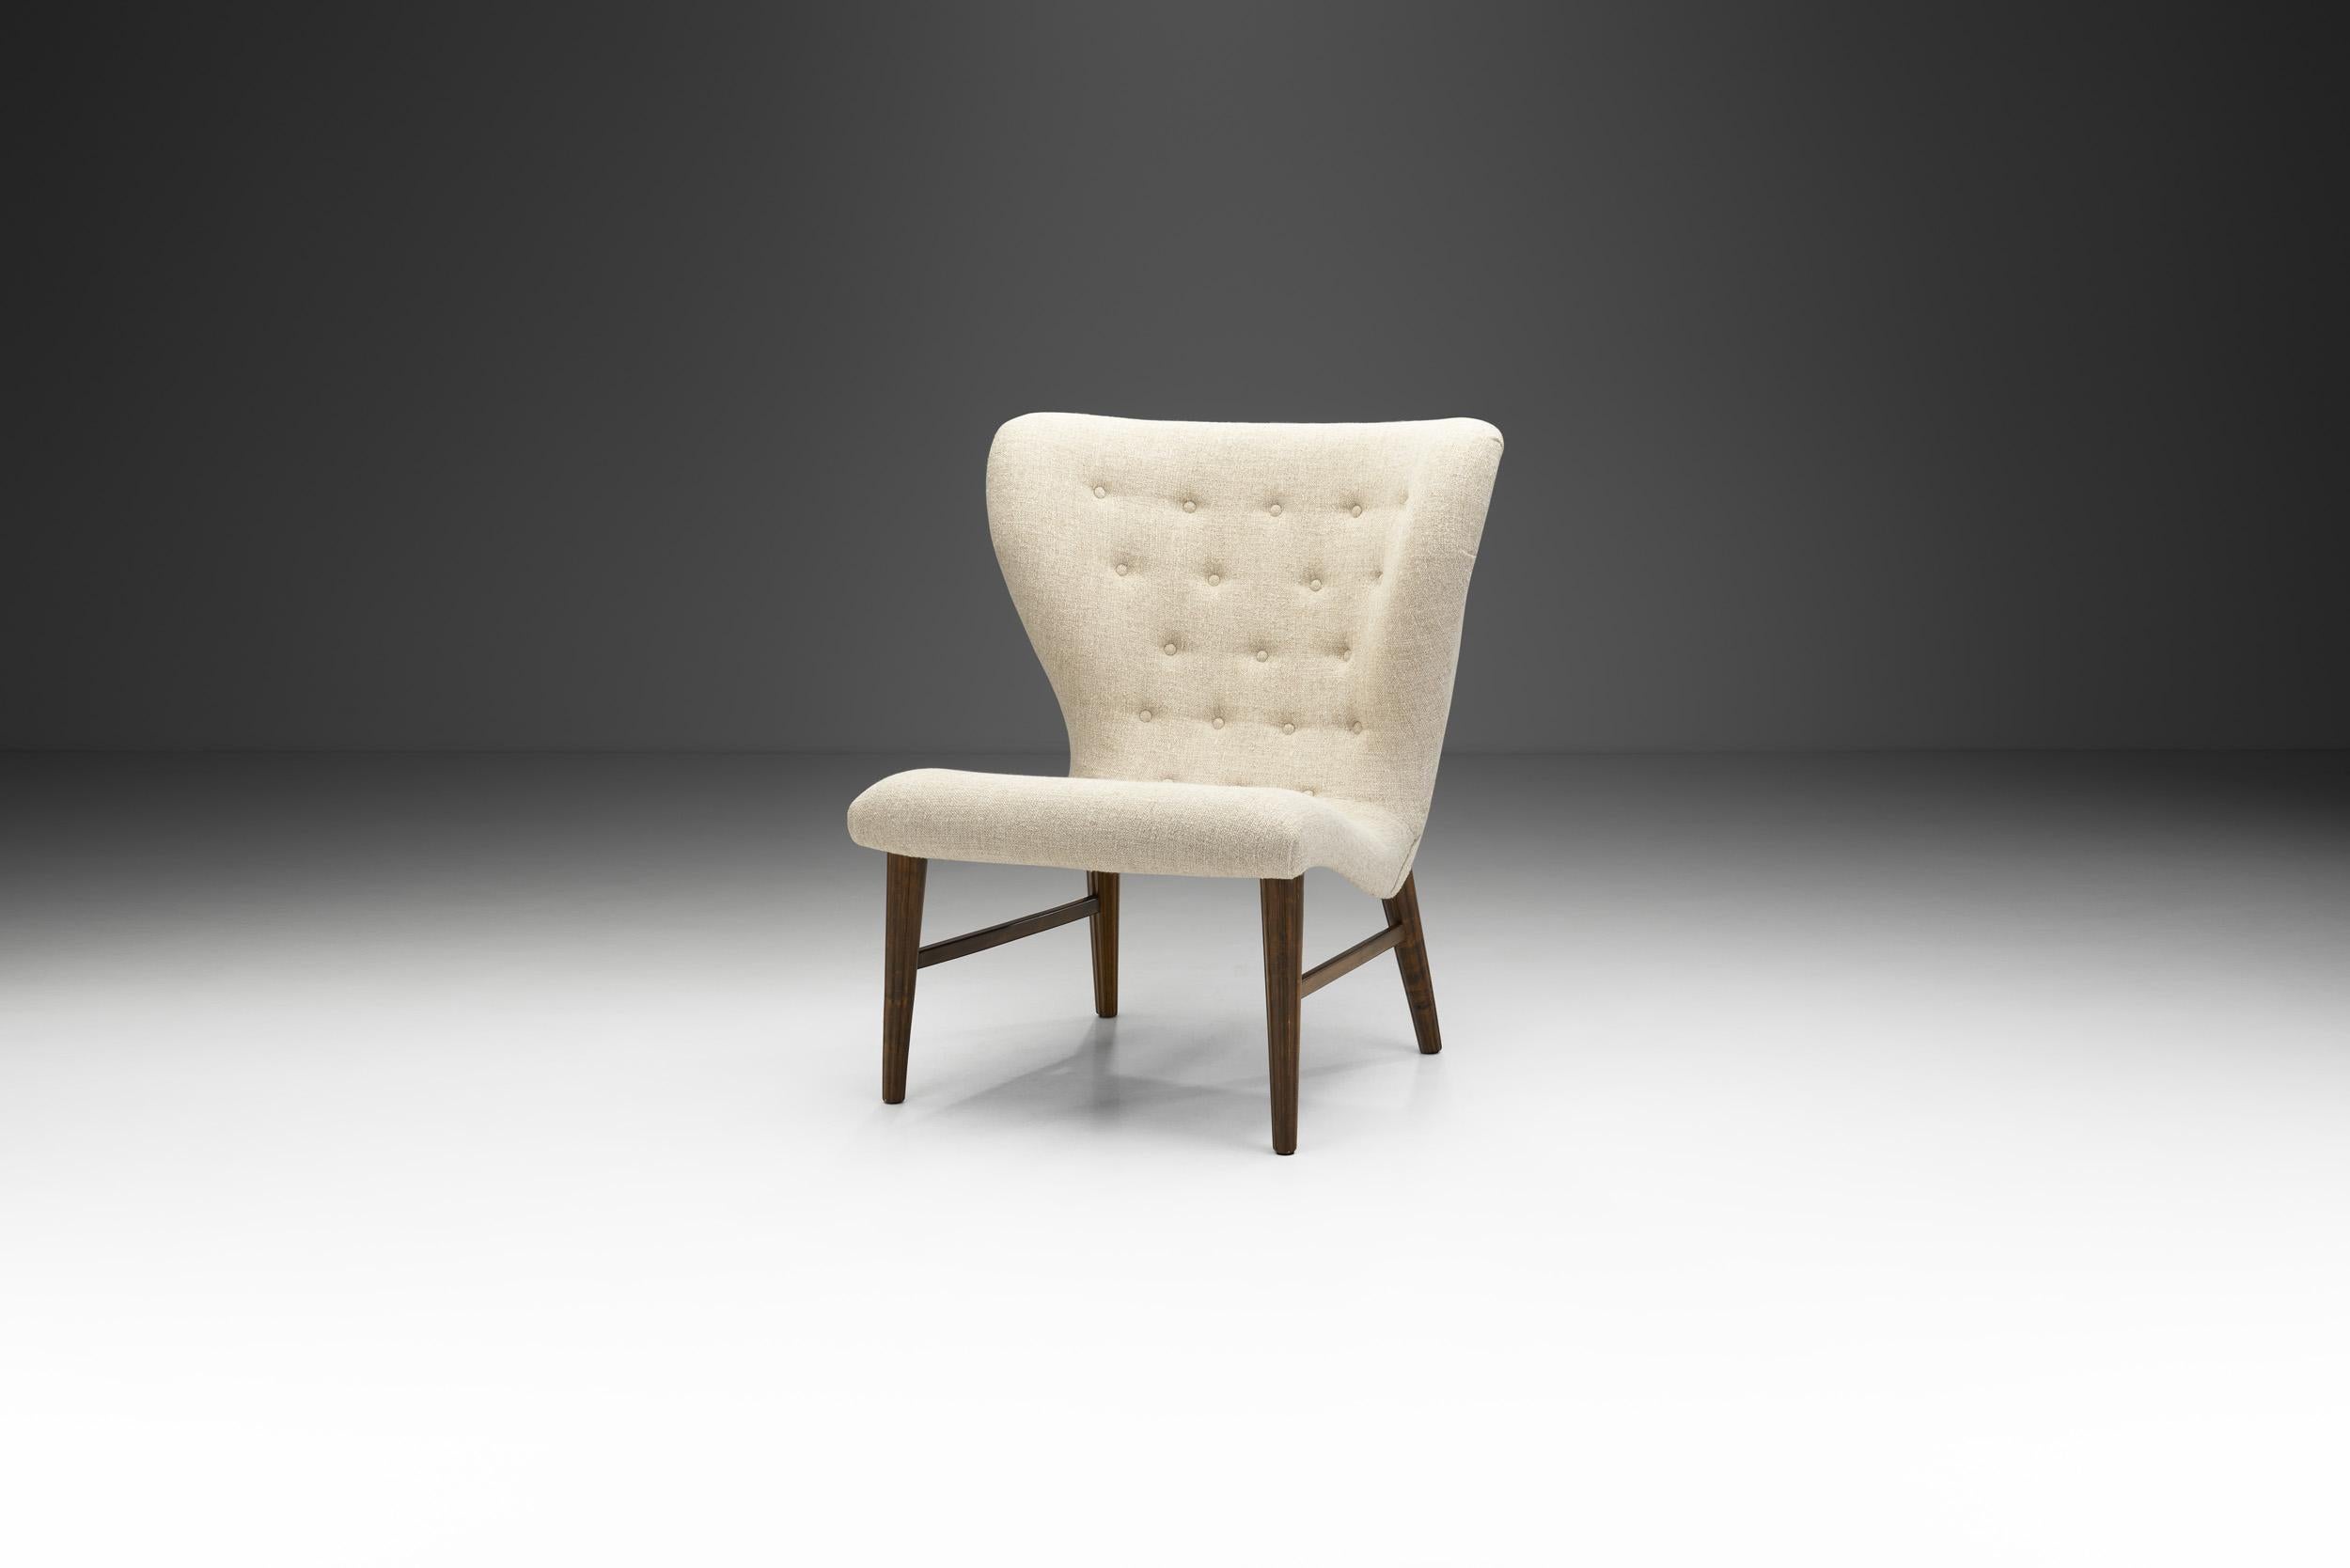 Le bois sombre, le beau rembourrage et le design intemporel d'Erik Bertil Karlén font de ce fauteuil rare une belle représentation de l'histoire du design moderne suédois du milieu du siècle dernier.

Pour ce modèle, la nature a manifestement été